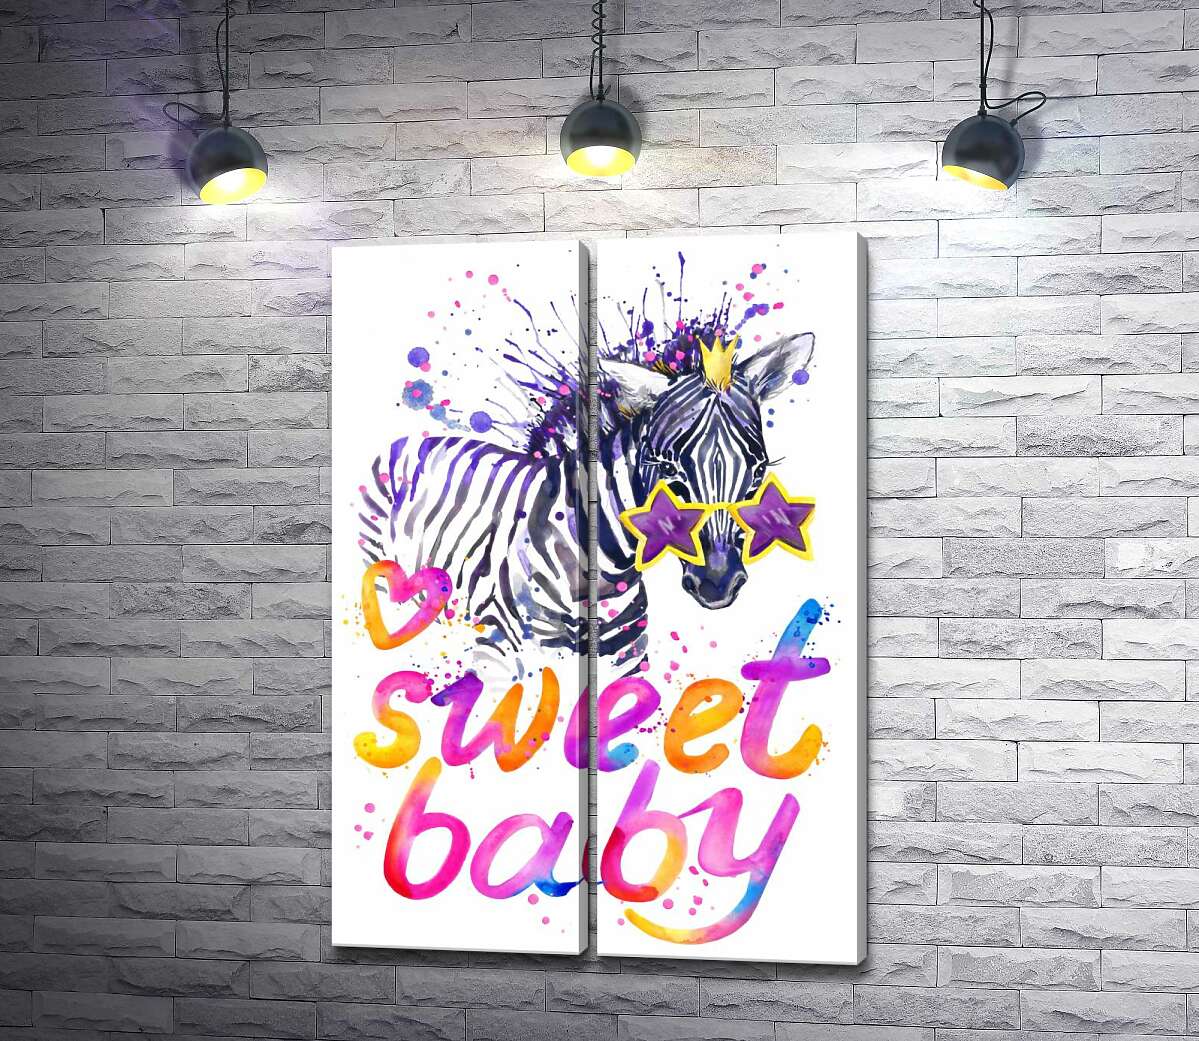 модульна картина Полосата зебра в зіркових окулярах поряд з написом "sweet baby"